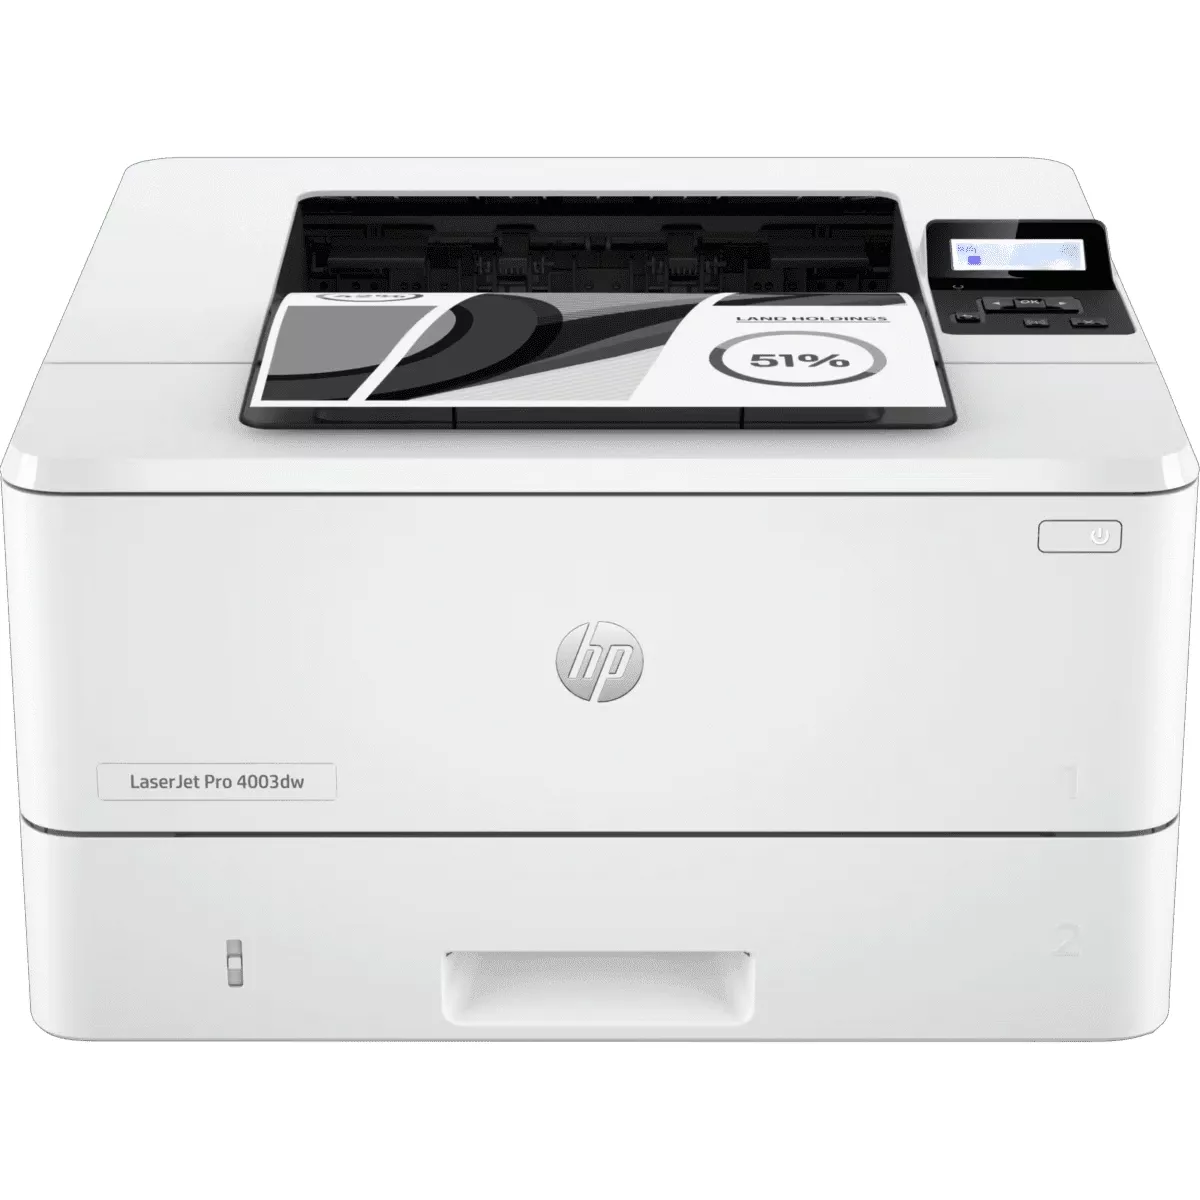 Impresora HP Laserjet Pro 4003DW Workgroup Printer hasta 40ppm Mono - 2Z610At